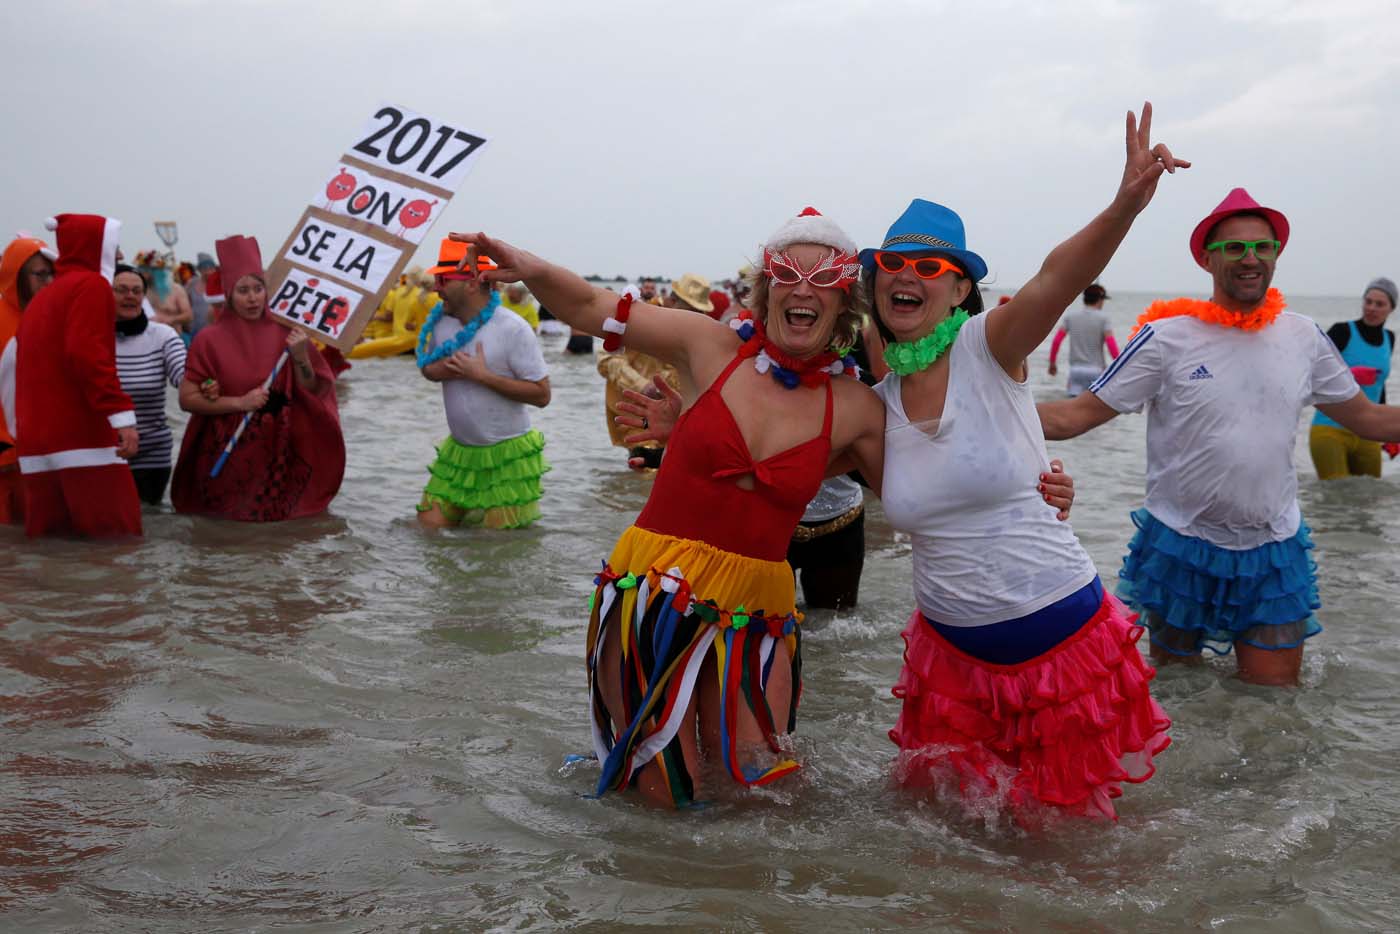 Europeos se echan un bañito de playa en el primer día del año (Fotos)